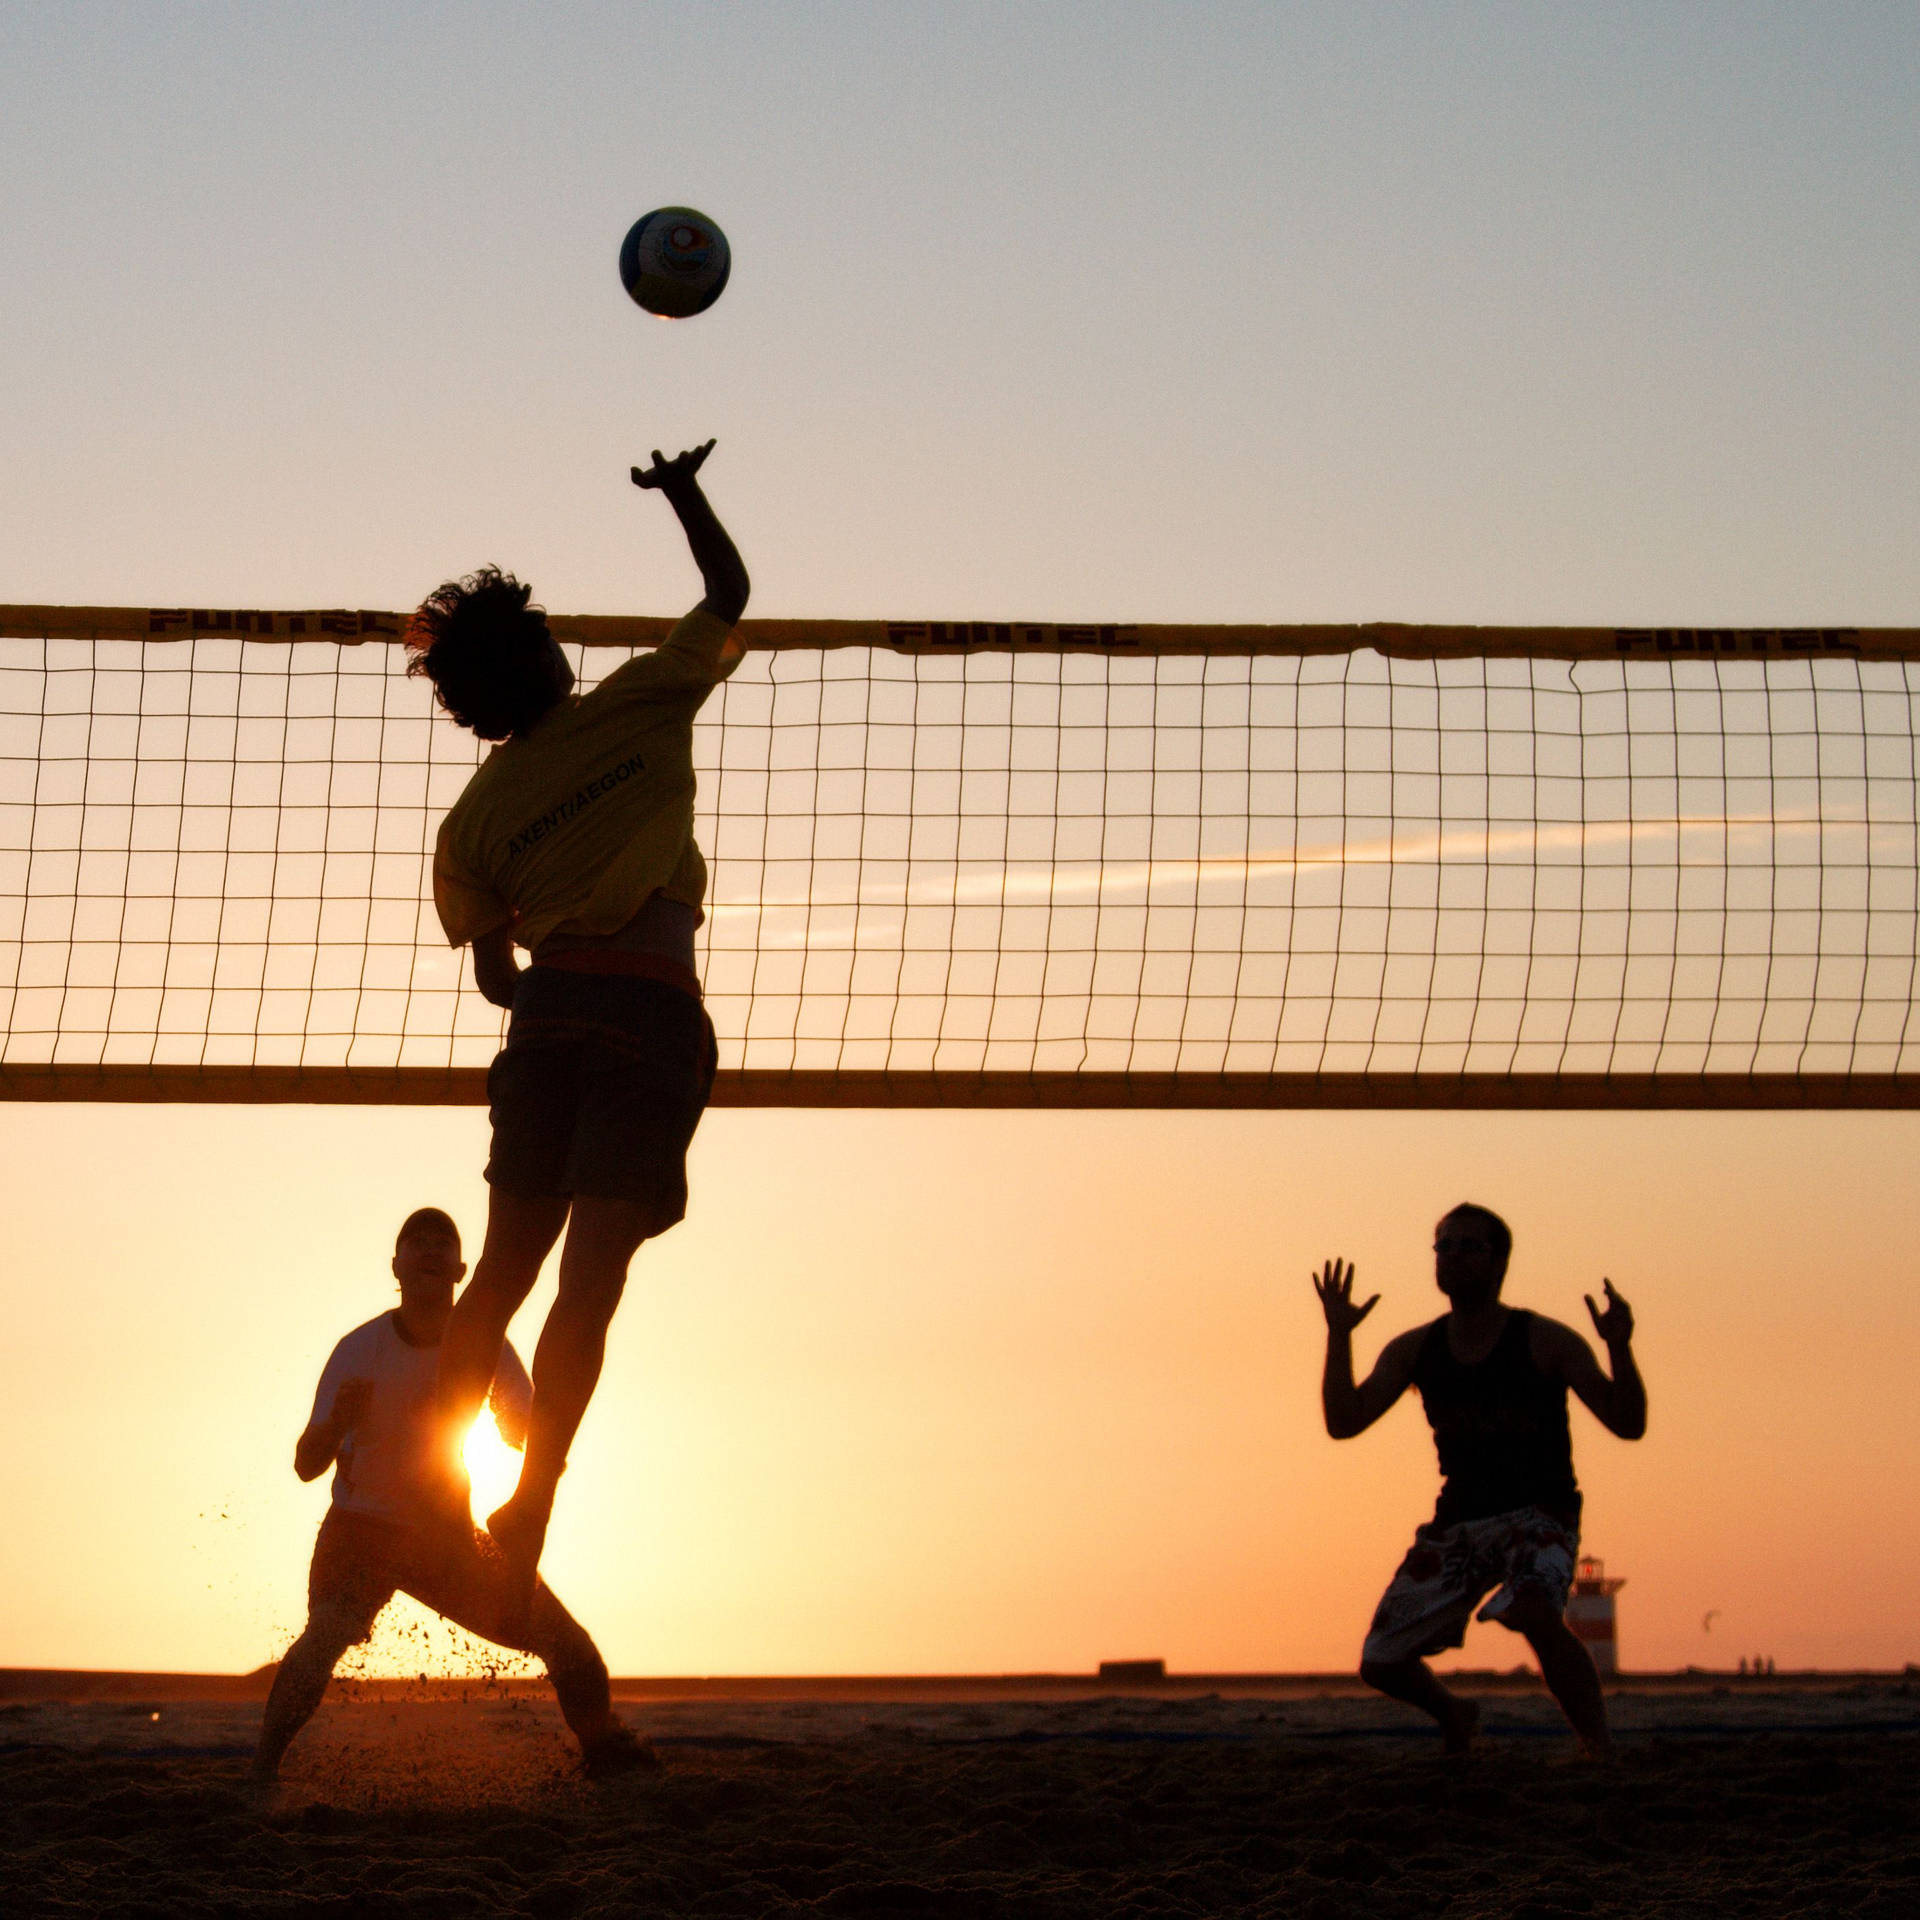 Beach Volleyball Men Silhouette At Sunset Wallpaper